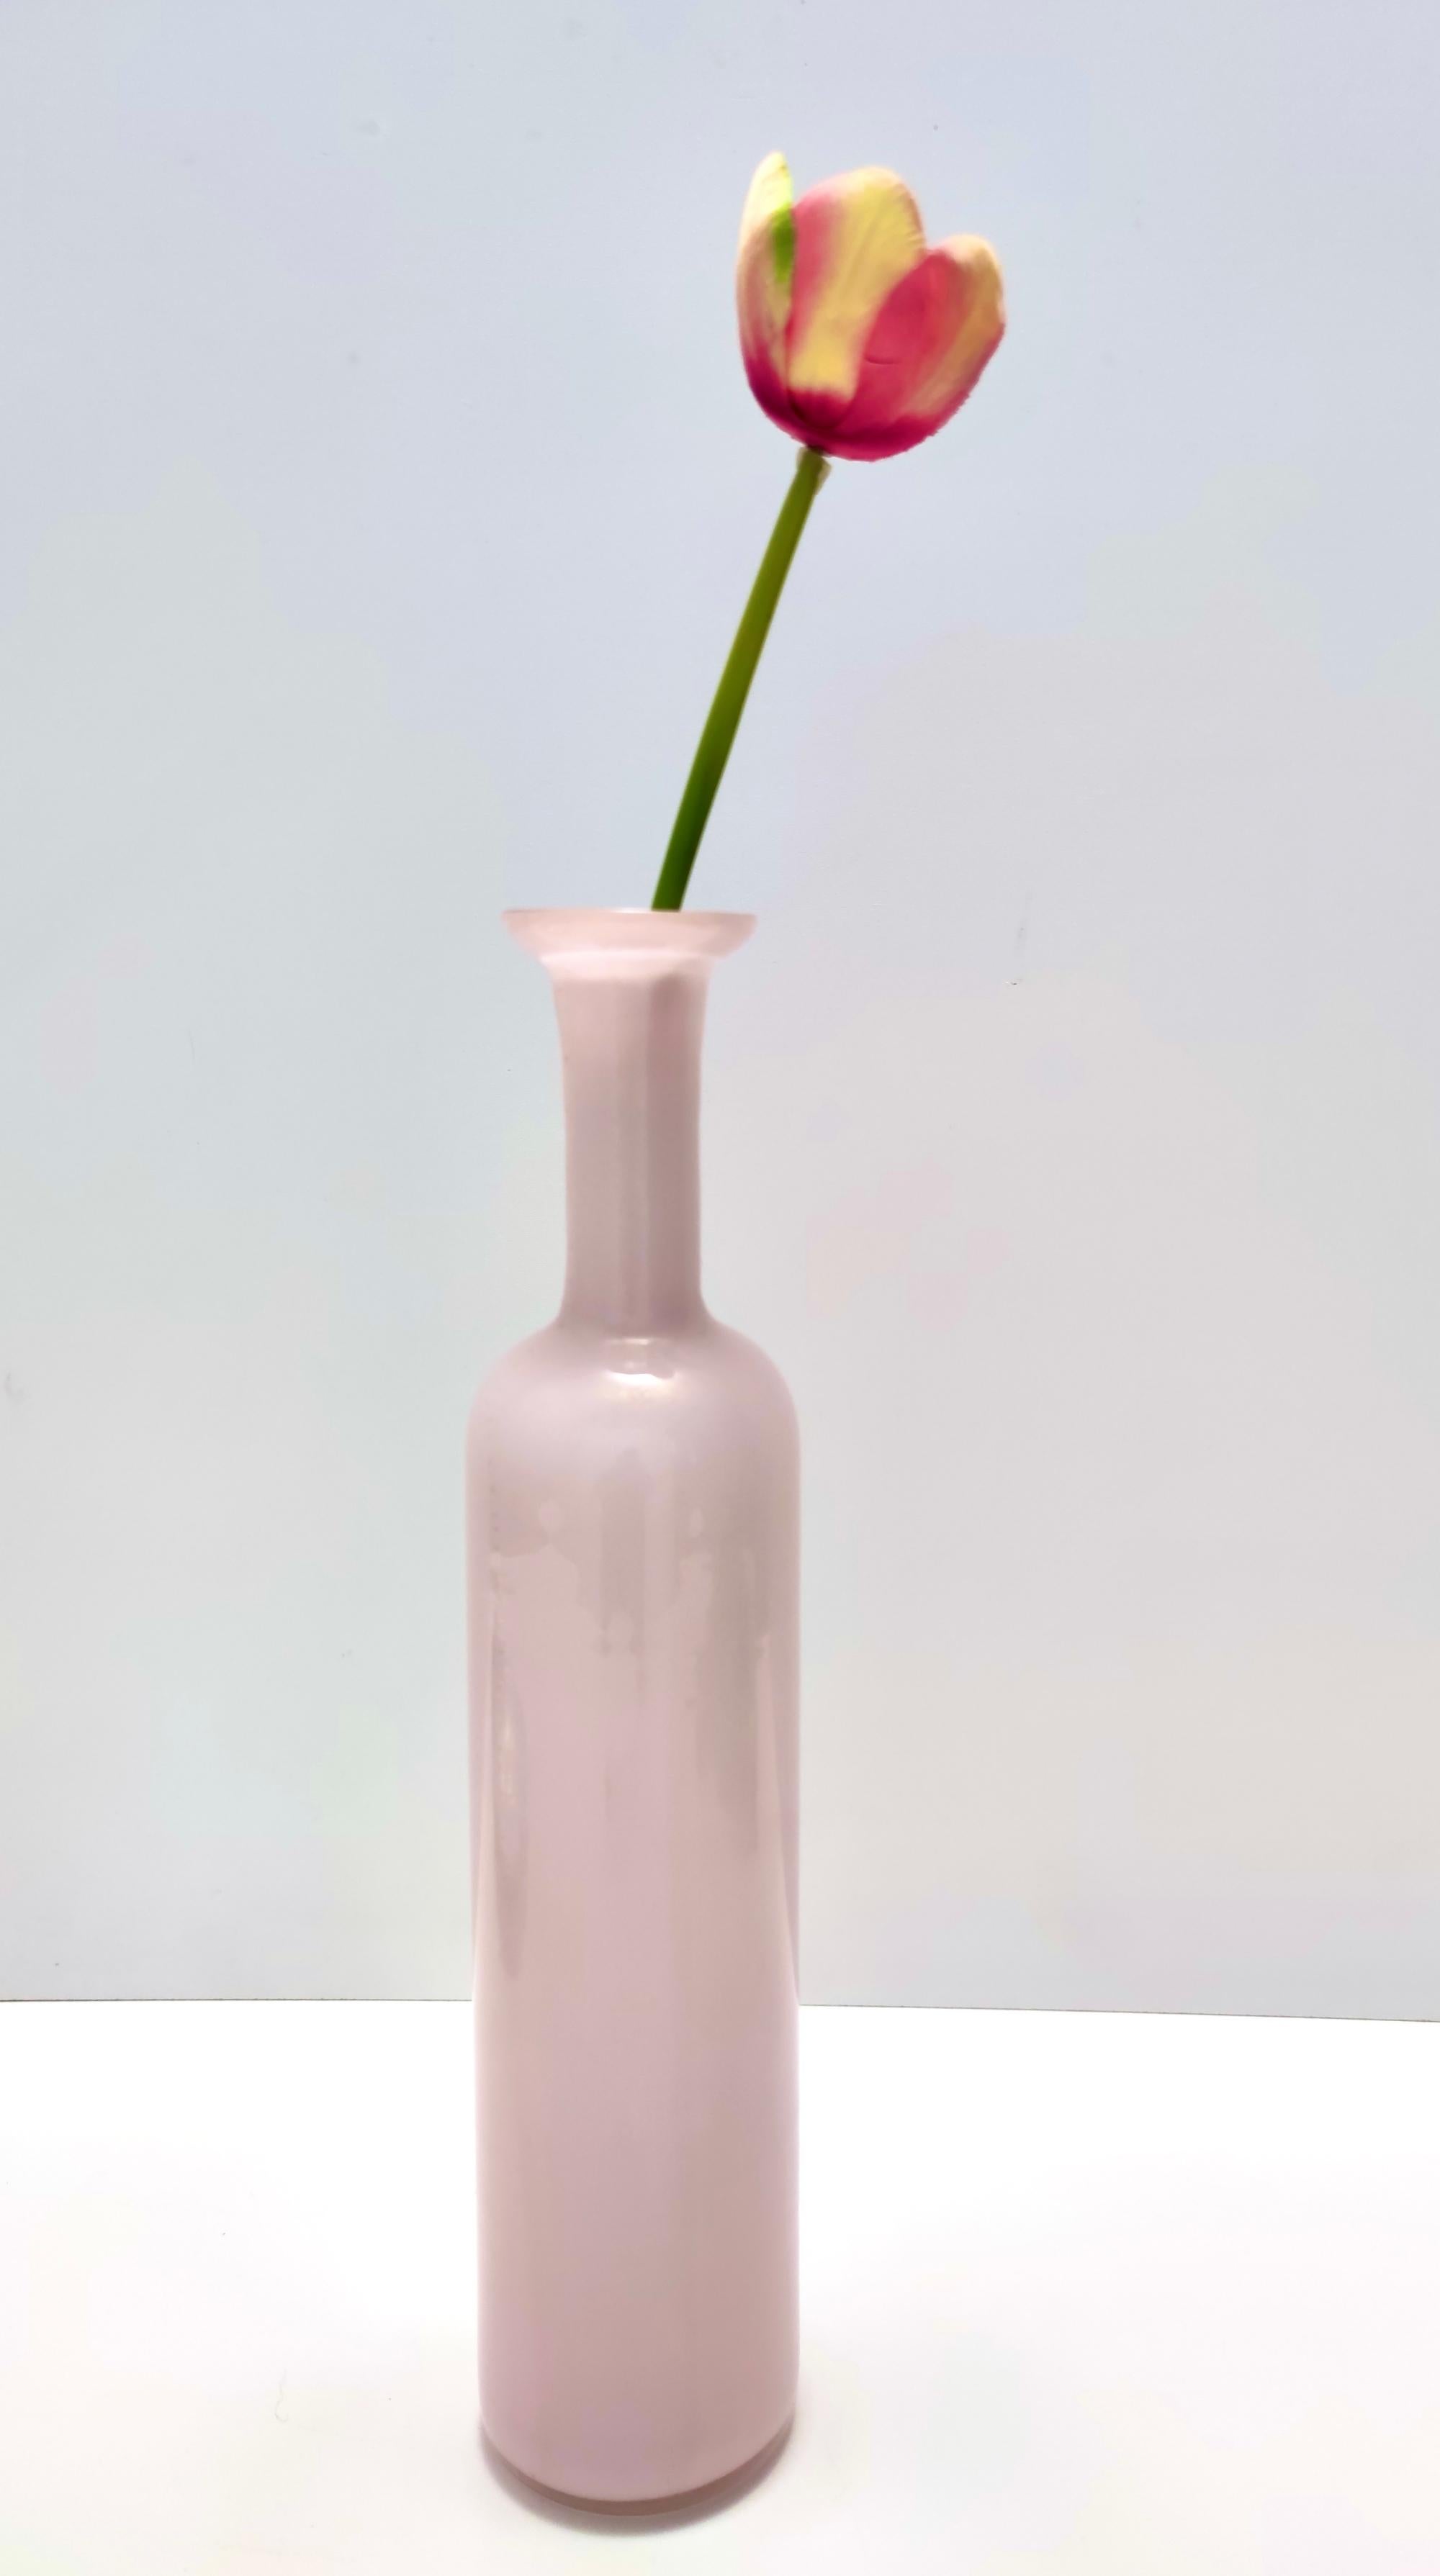 Fabriqué en Italie, années 1970. 
Ce magnifique vase/bouteille est réalisé en verre de Murano enchâssé de rose et de feuilles d'or.
Il s'agit d'une pièce vintage, elle peut donc présenter de légères traces d'utilisation, mais elle peut être